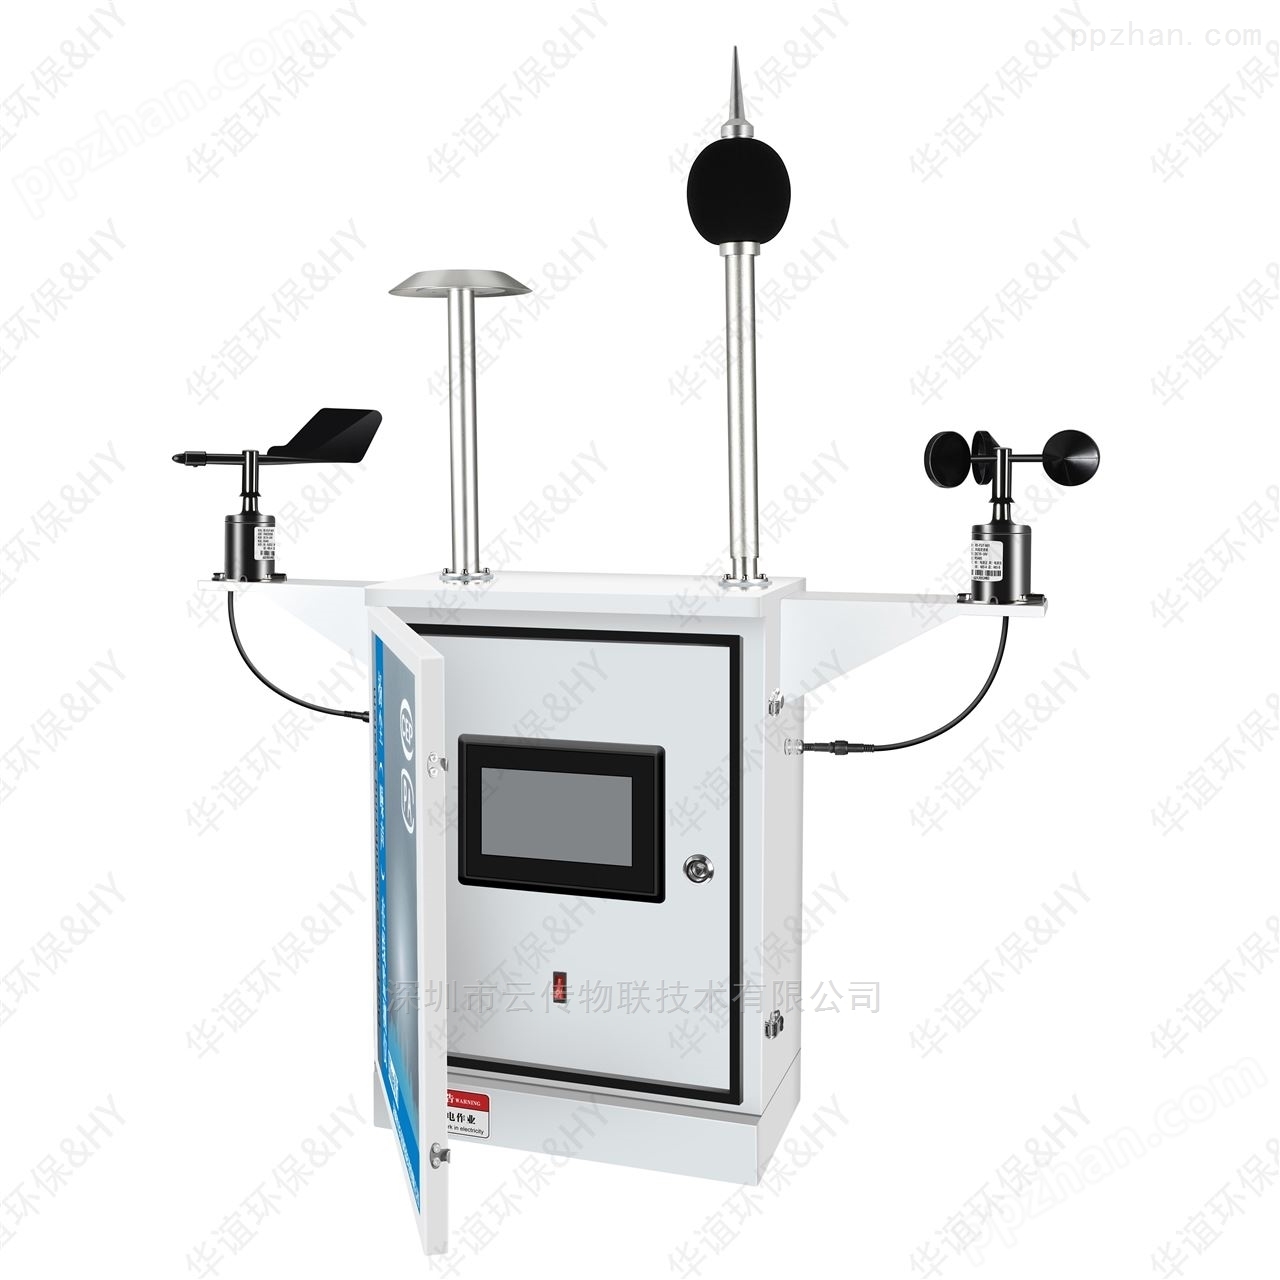 扬尘实时监测系统 负氧离子监测仪器